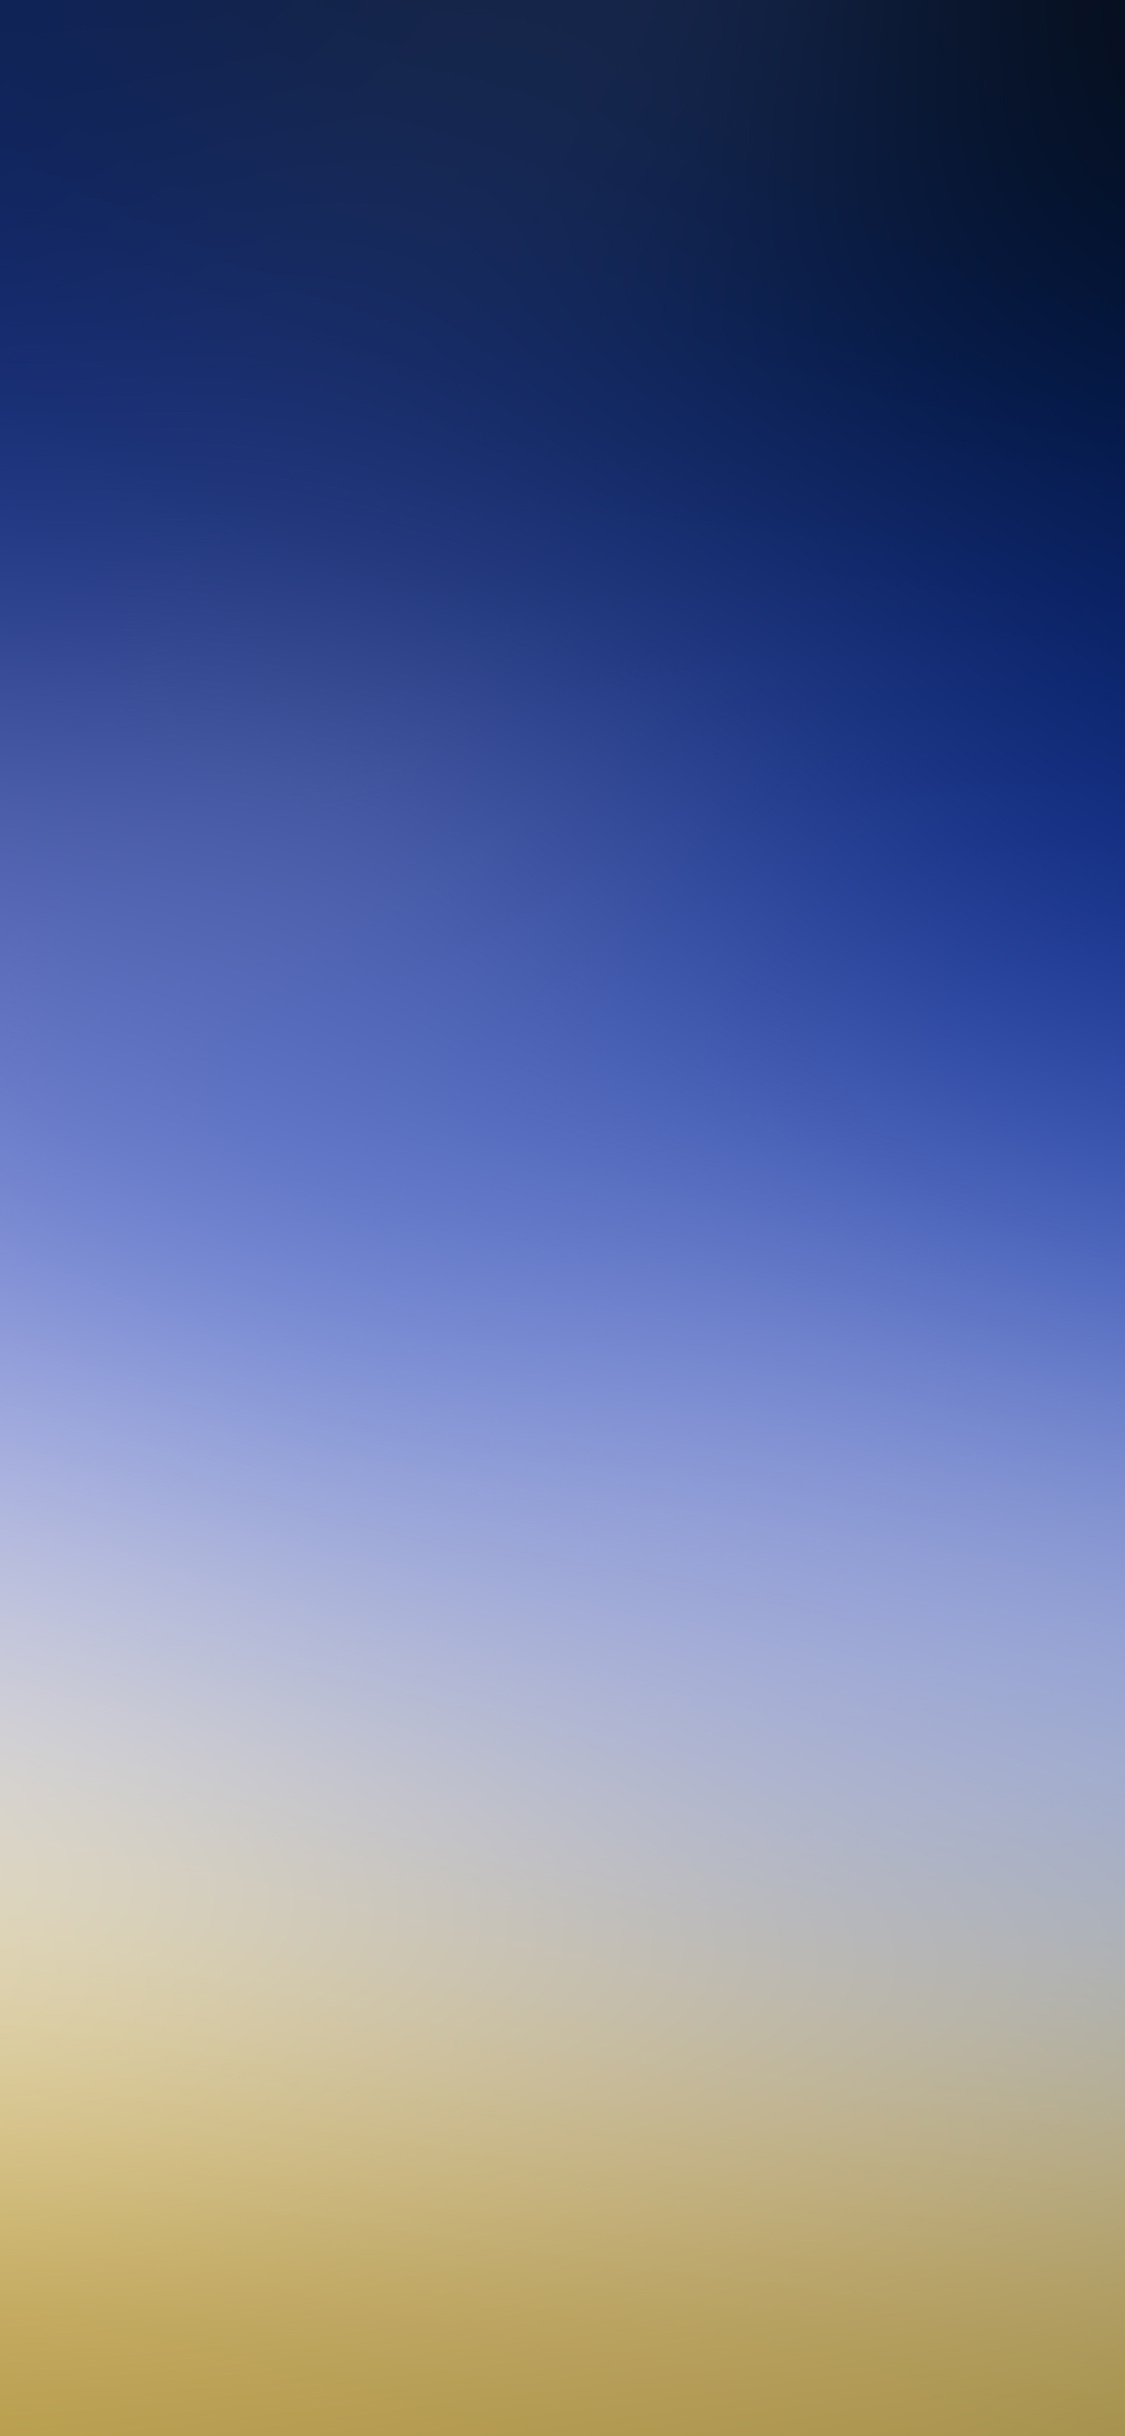 iPhone X wallpaper. sky blue yellow gradation blur